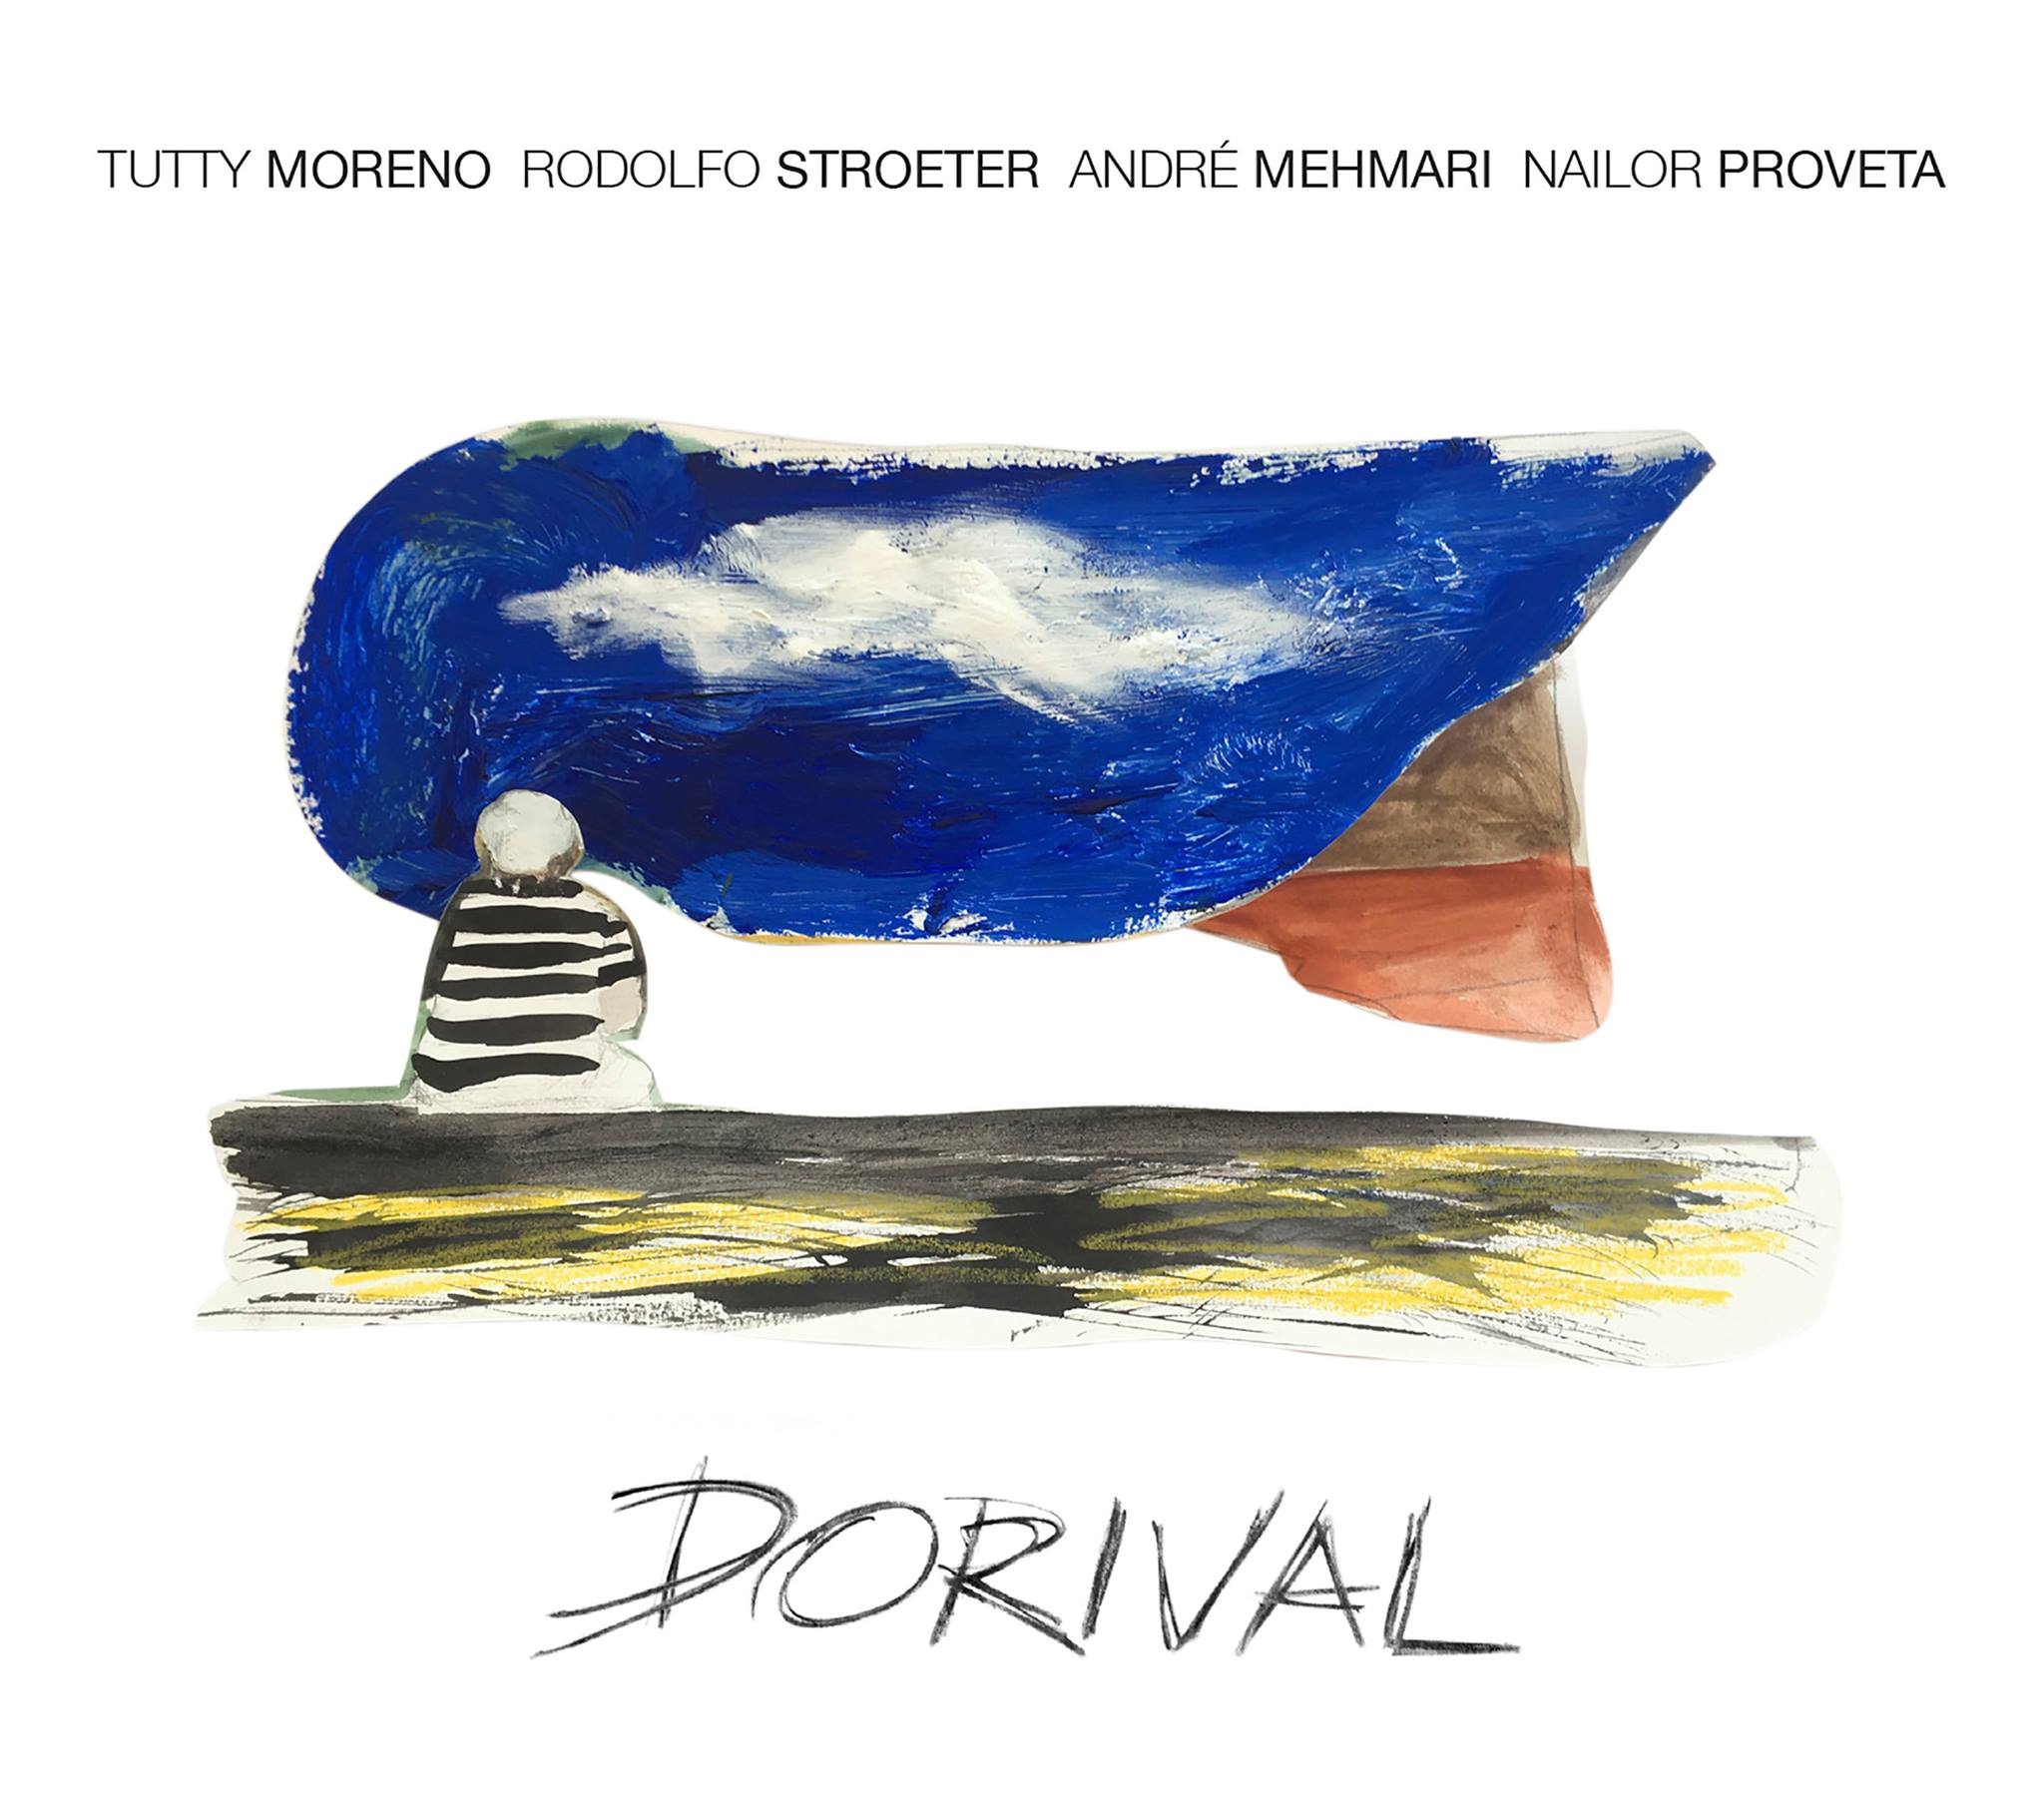 revistaprosaversoearte.com - 'Dorival', álbum de Tutty Moreno, Rodolfo Stroeter, André Mehmari e Nailor Proveta